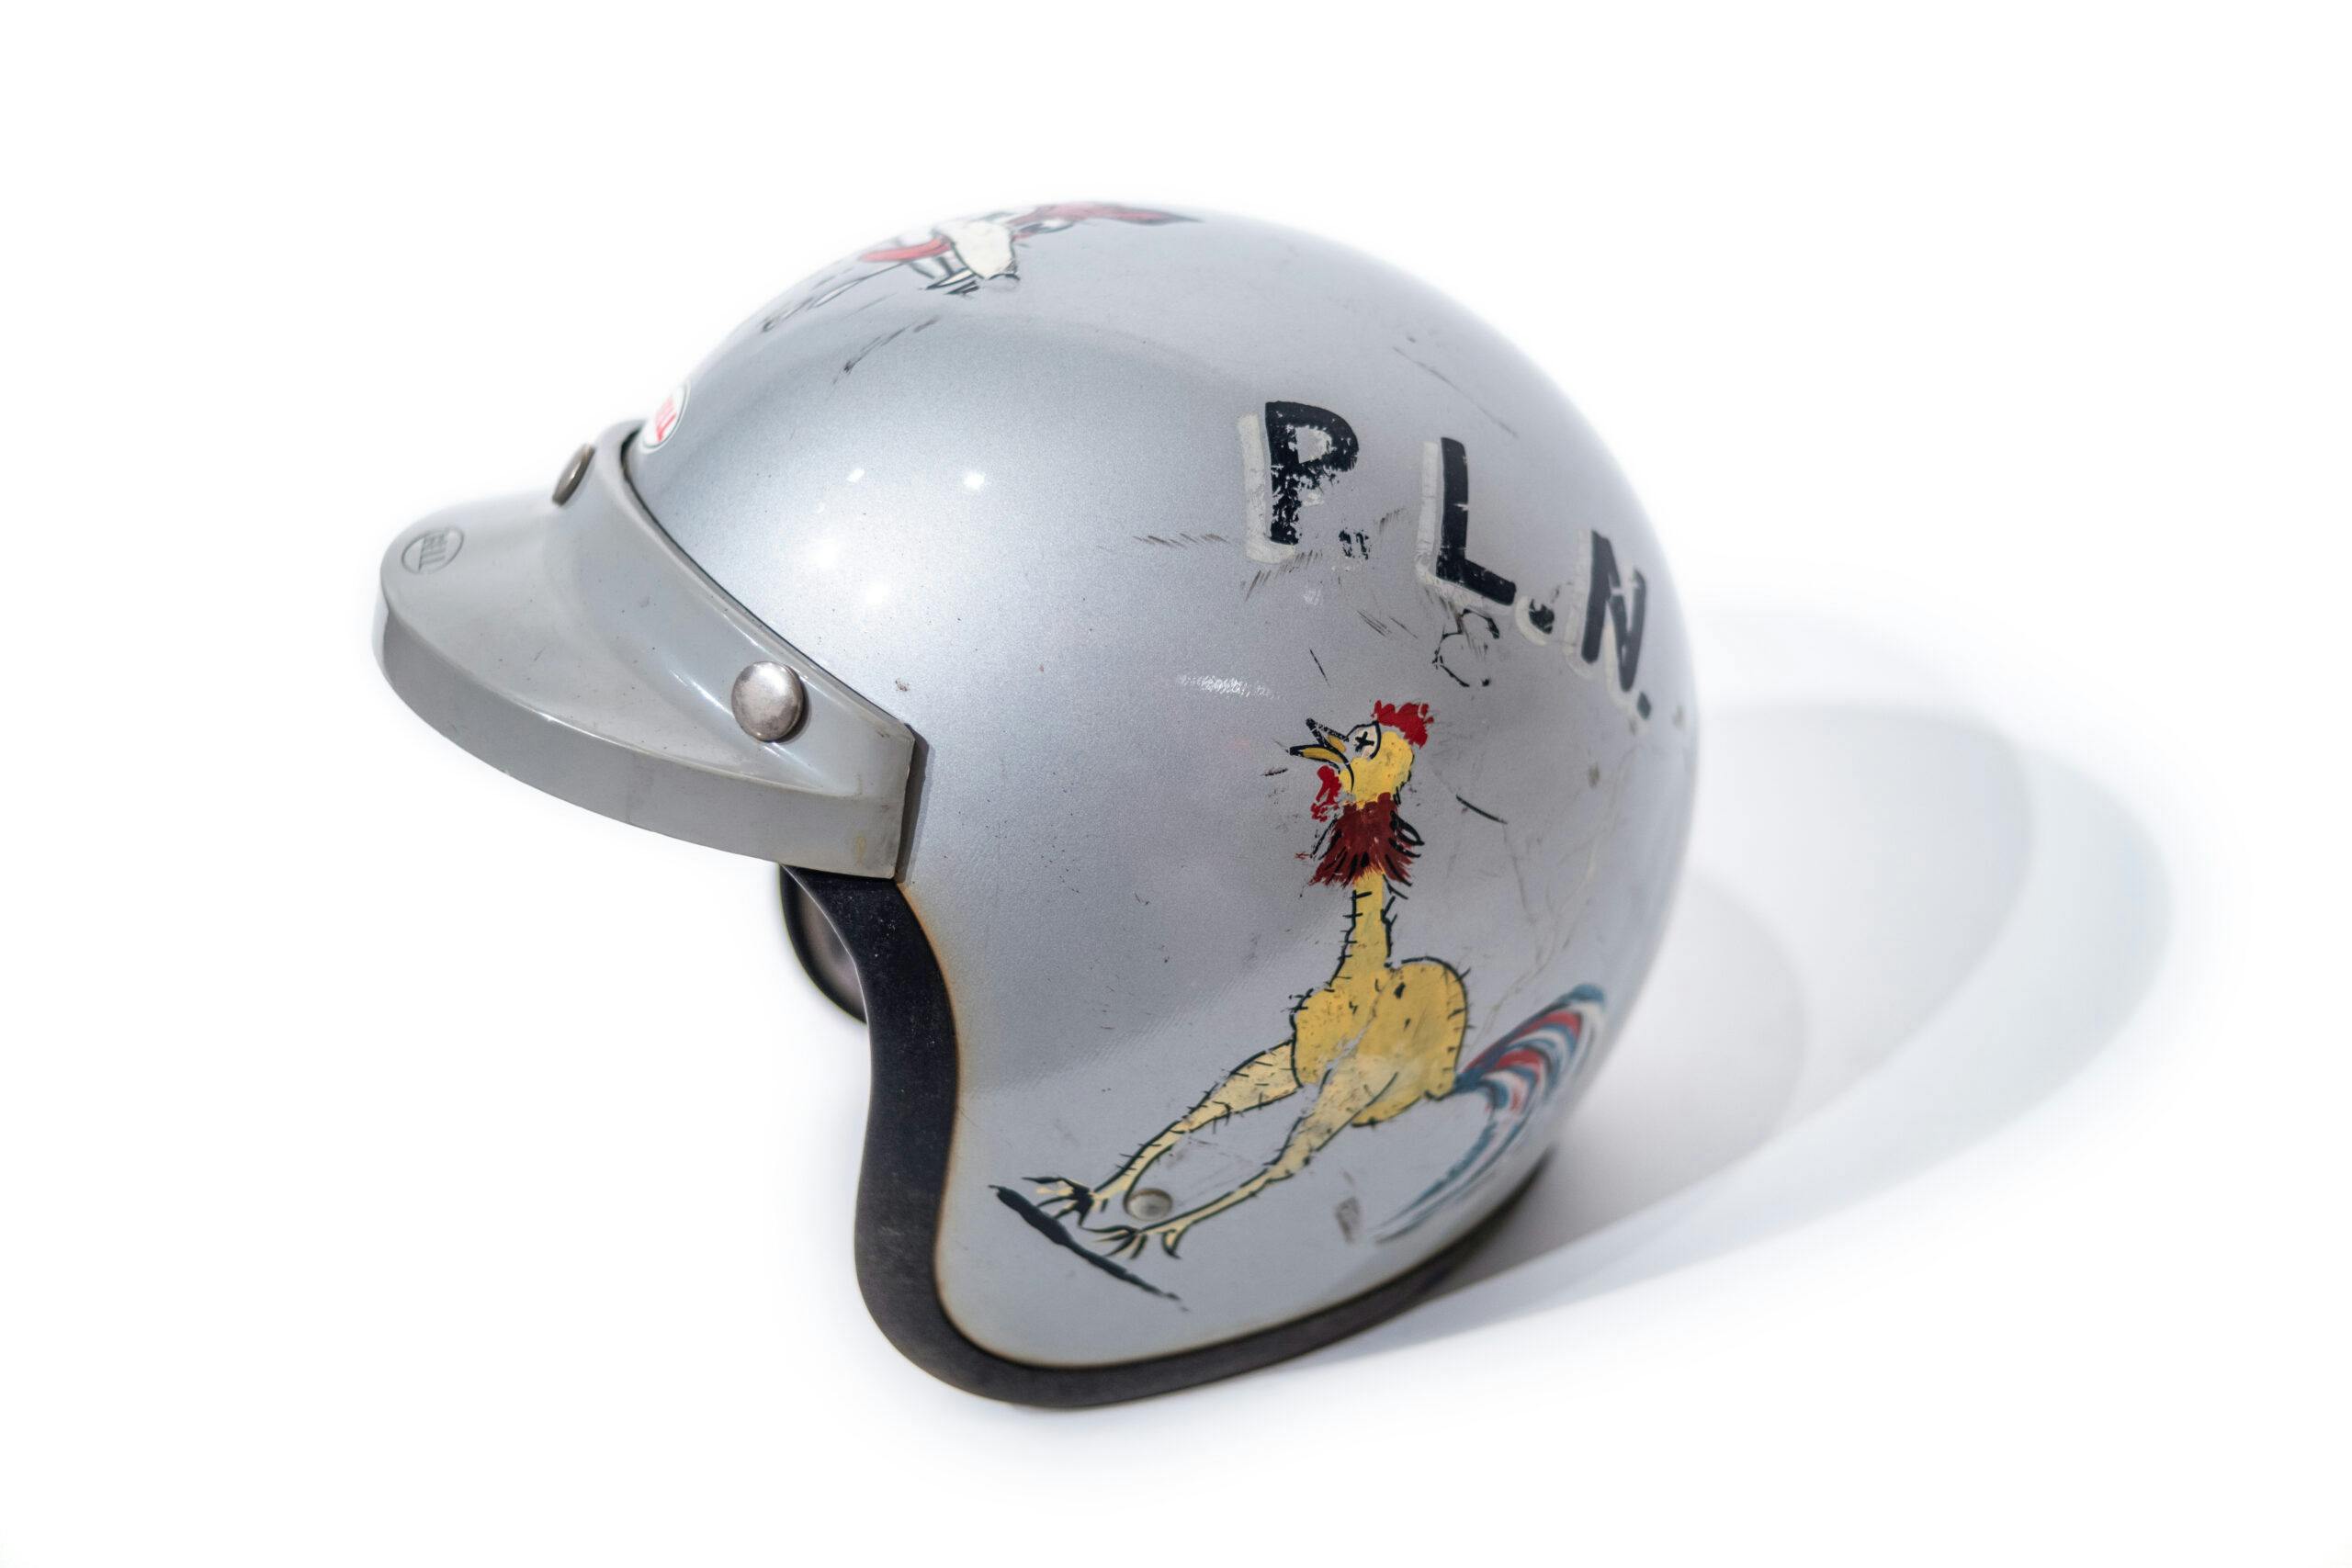 Paul Newman chicken racing helmet